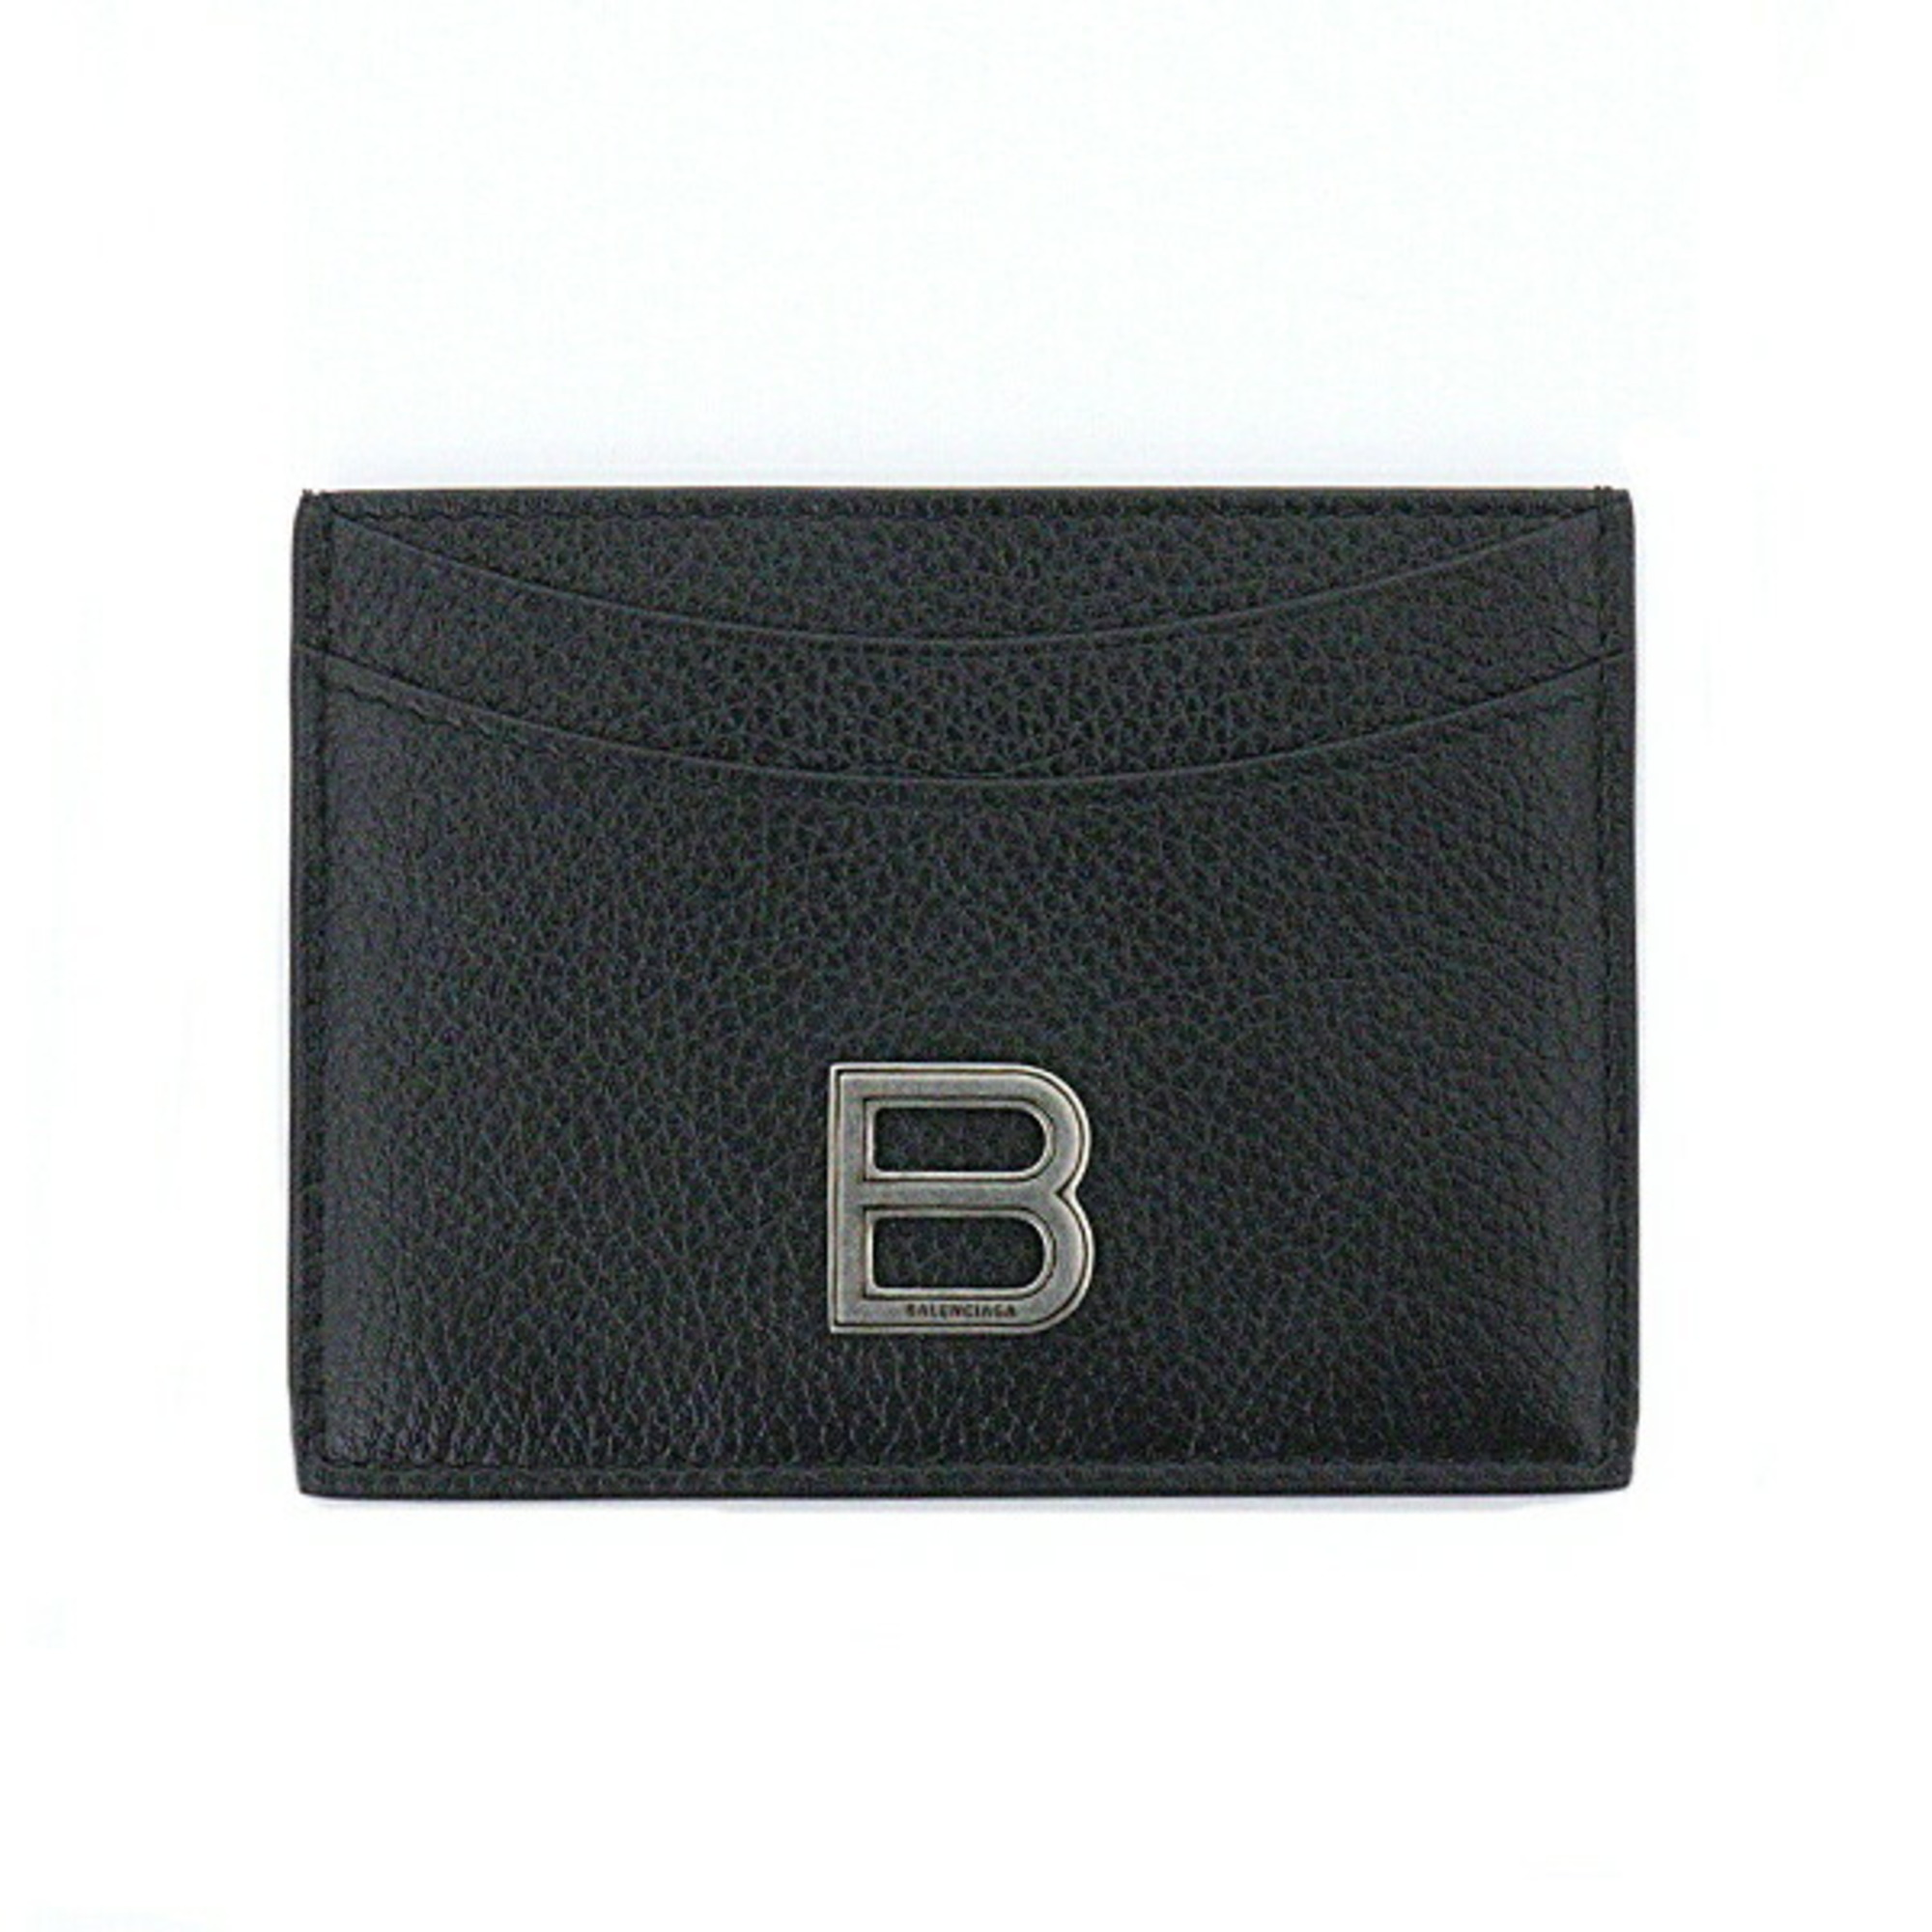 Balenciaga card case 637370 black